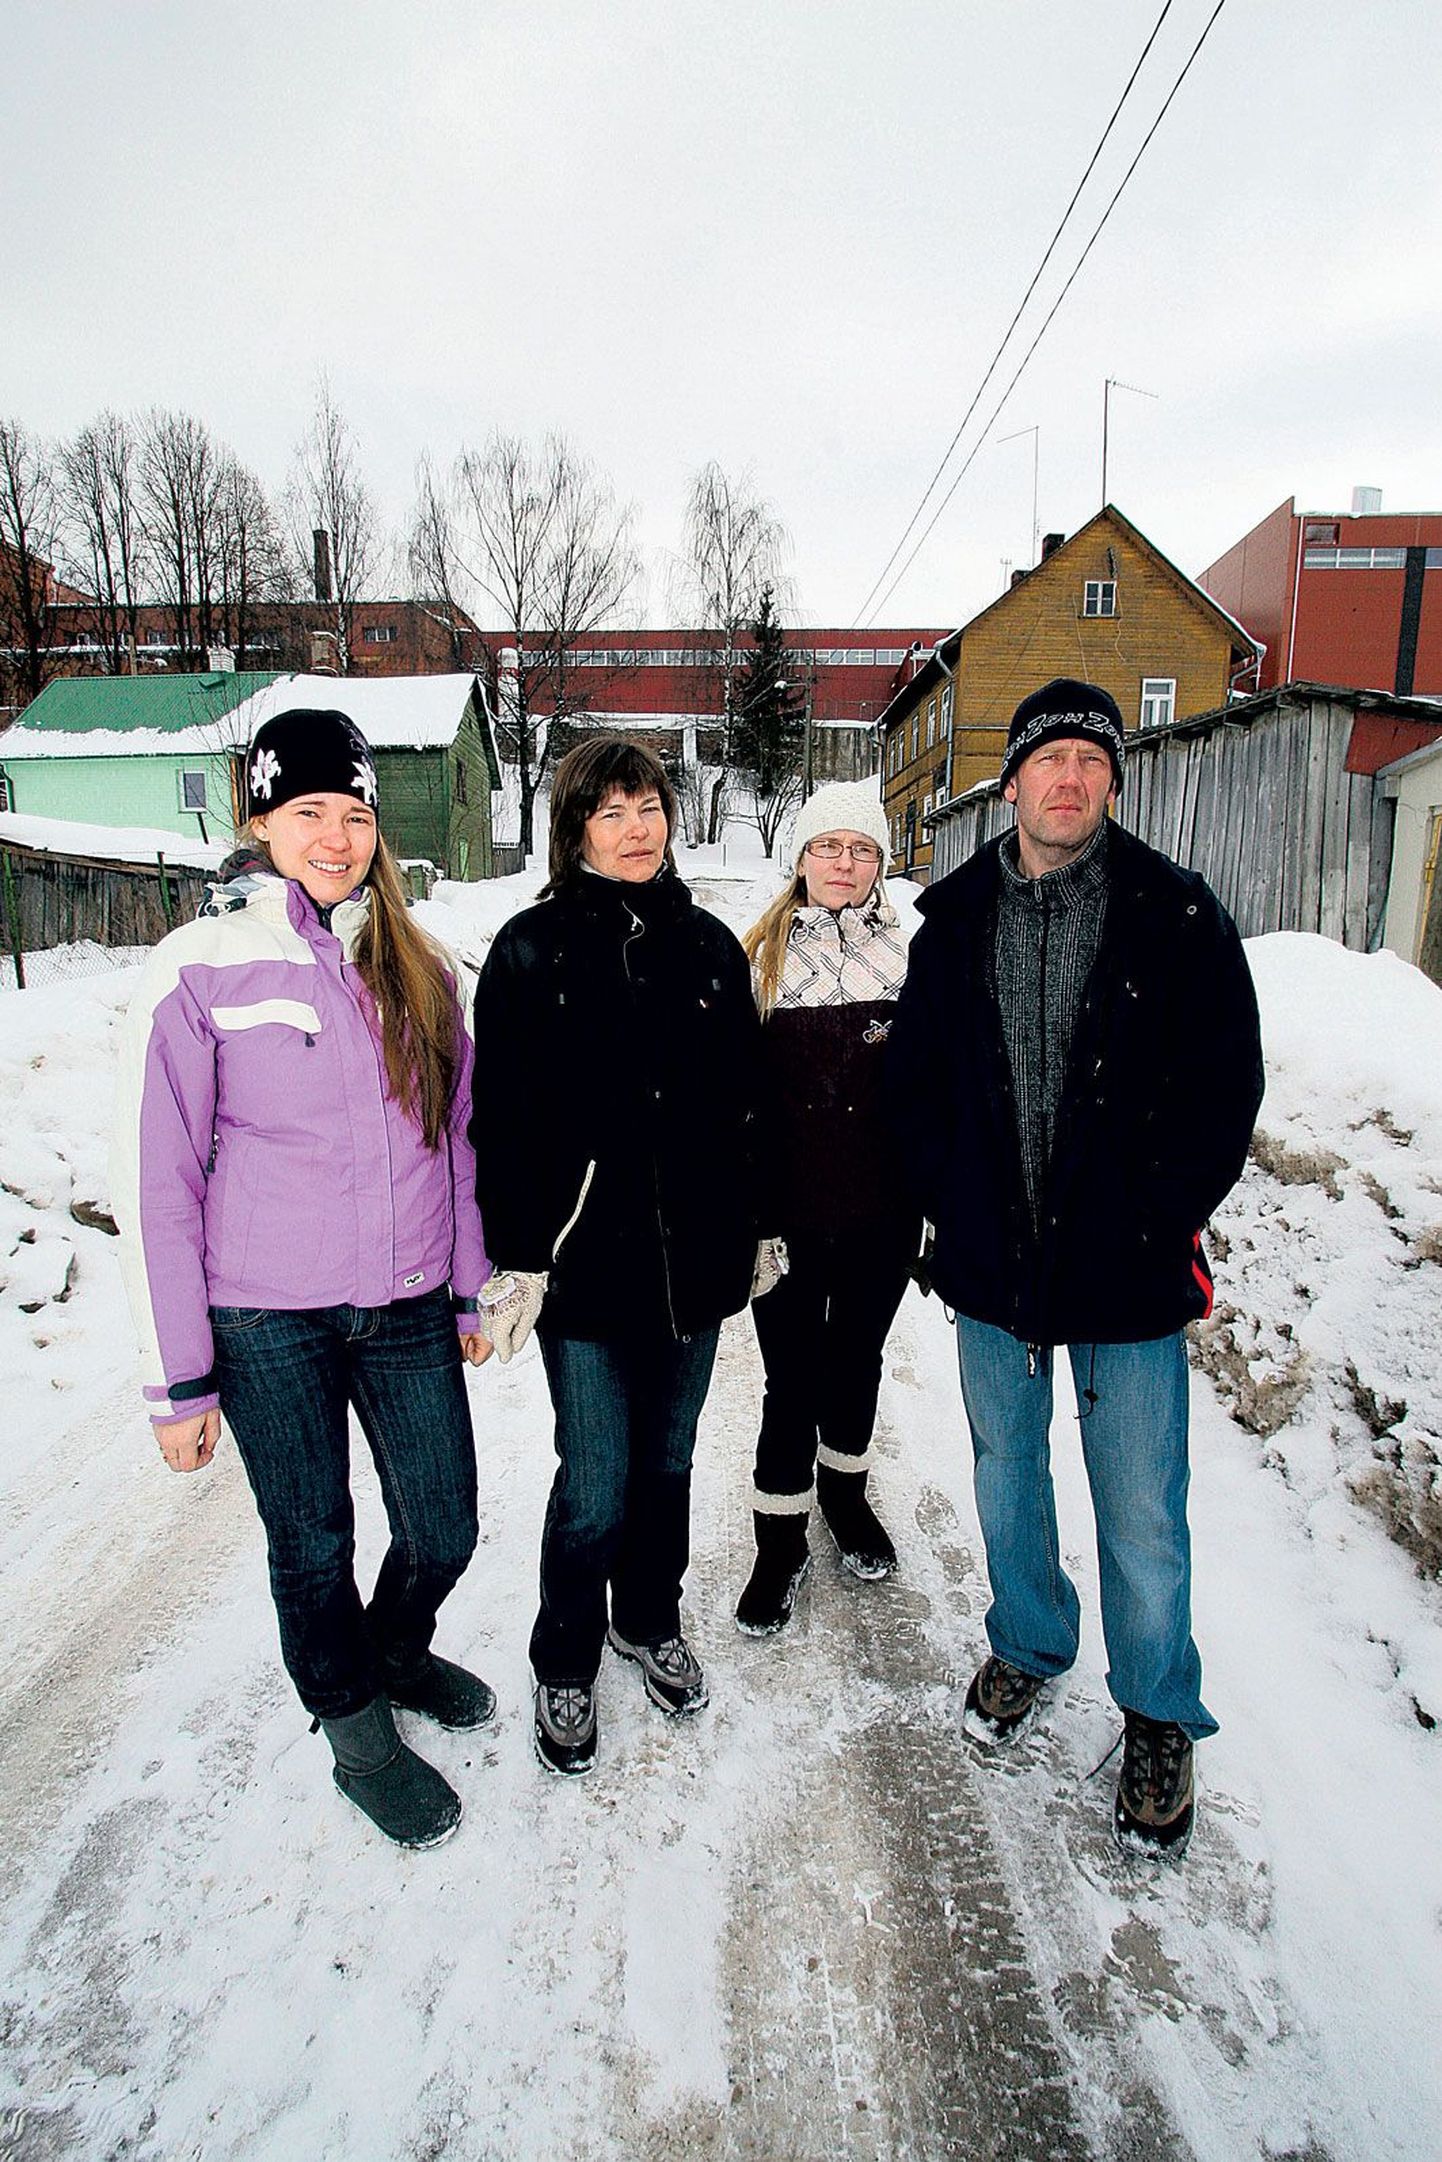 Õlletehase mürareostust on Piiri tänavas viimastel aastatel vaevalt aimata, kinnitab Piiri 8 elav perekond Udumäe – Kaisi (vasakult), Irina, Liis ja Uku.